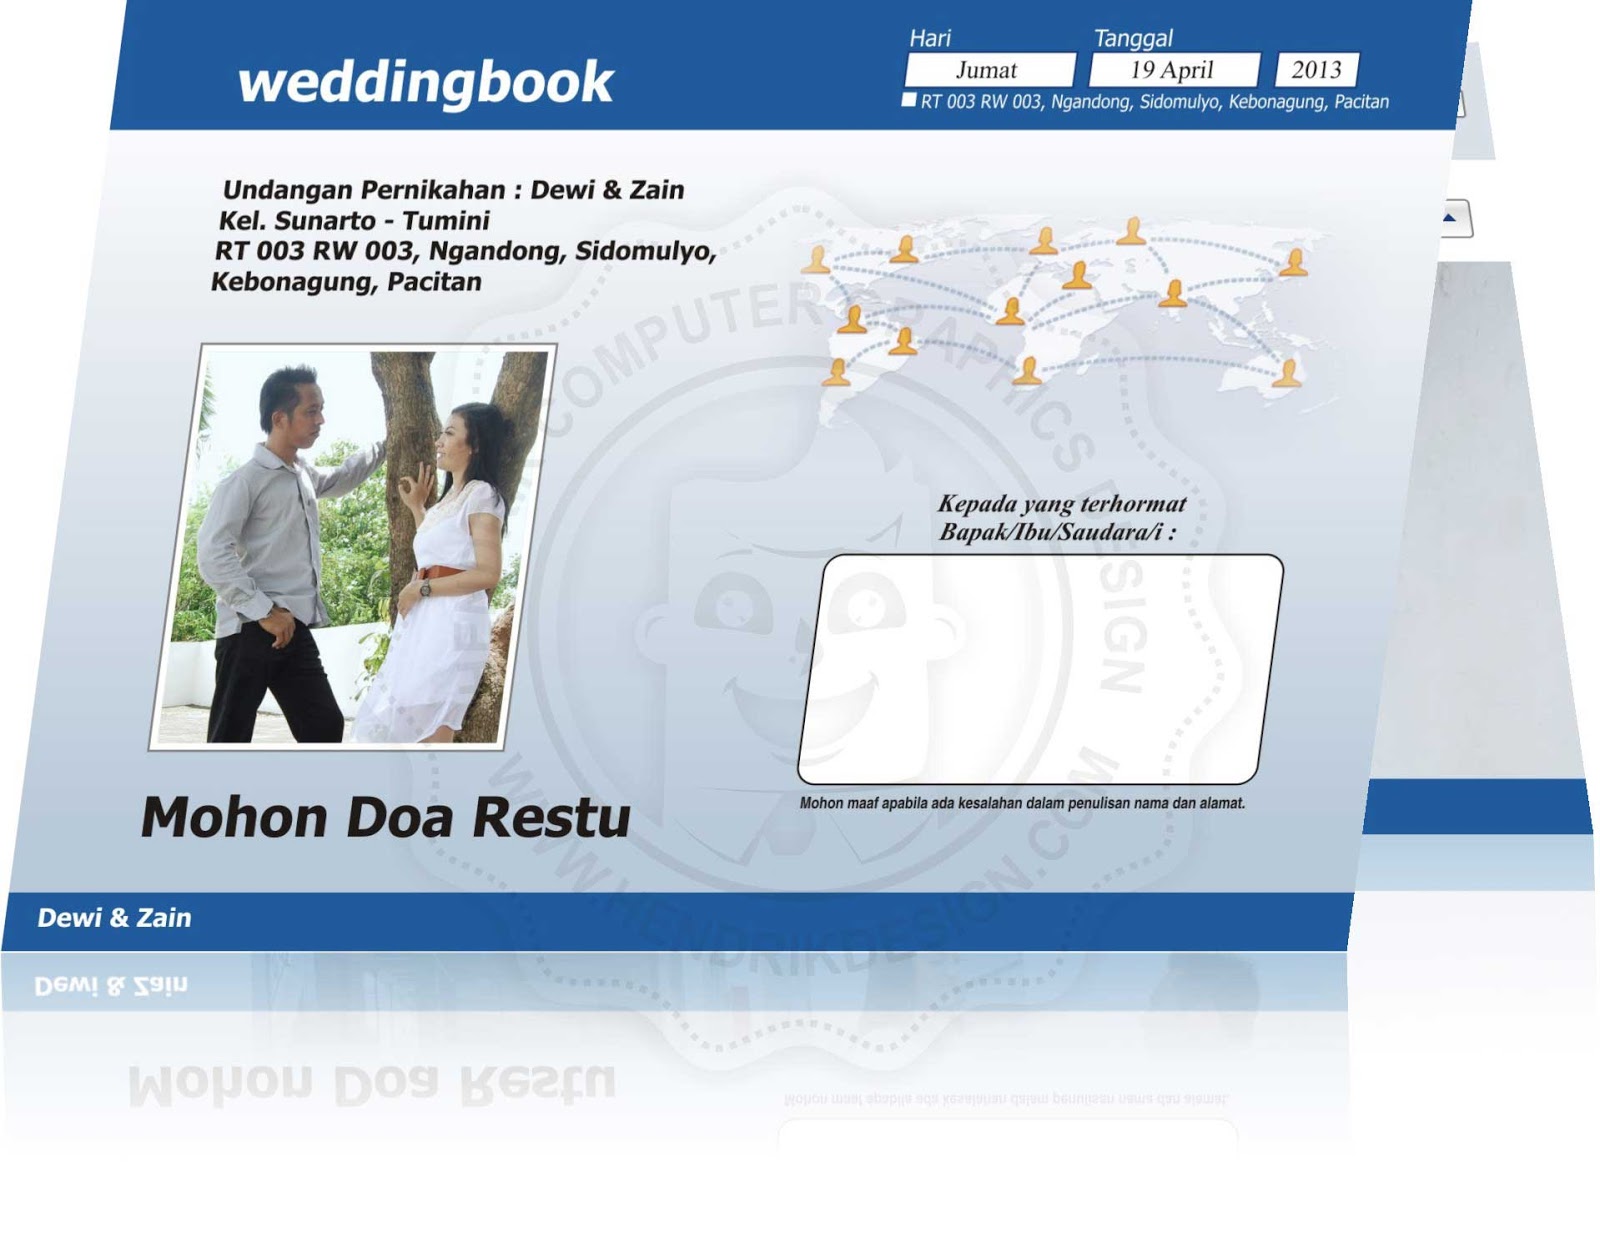 Contoh Undangan Pernikahan Model Facebook Hcgd 09 